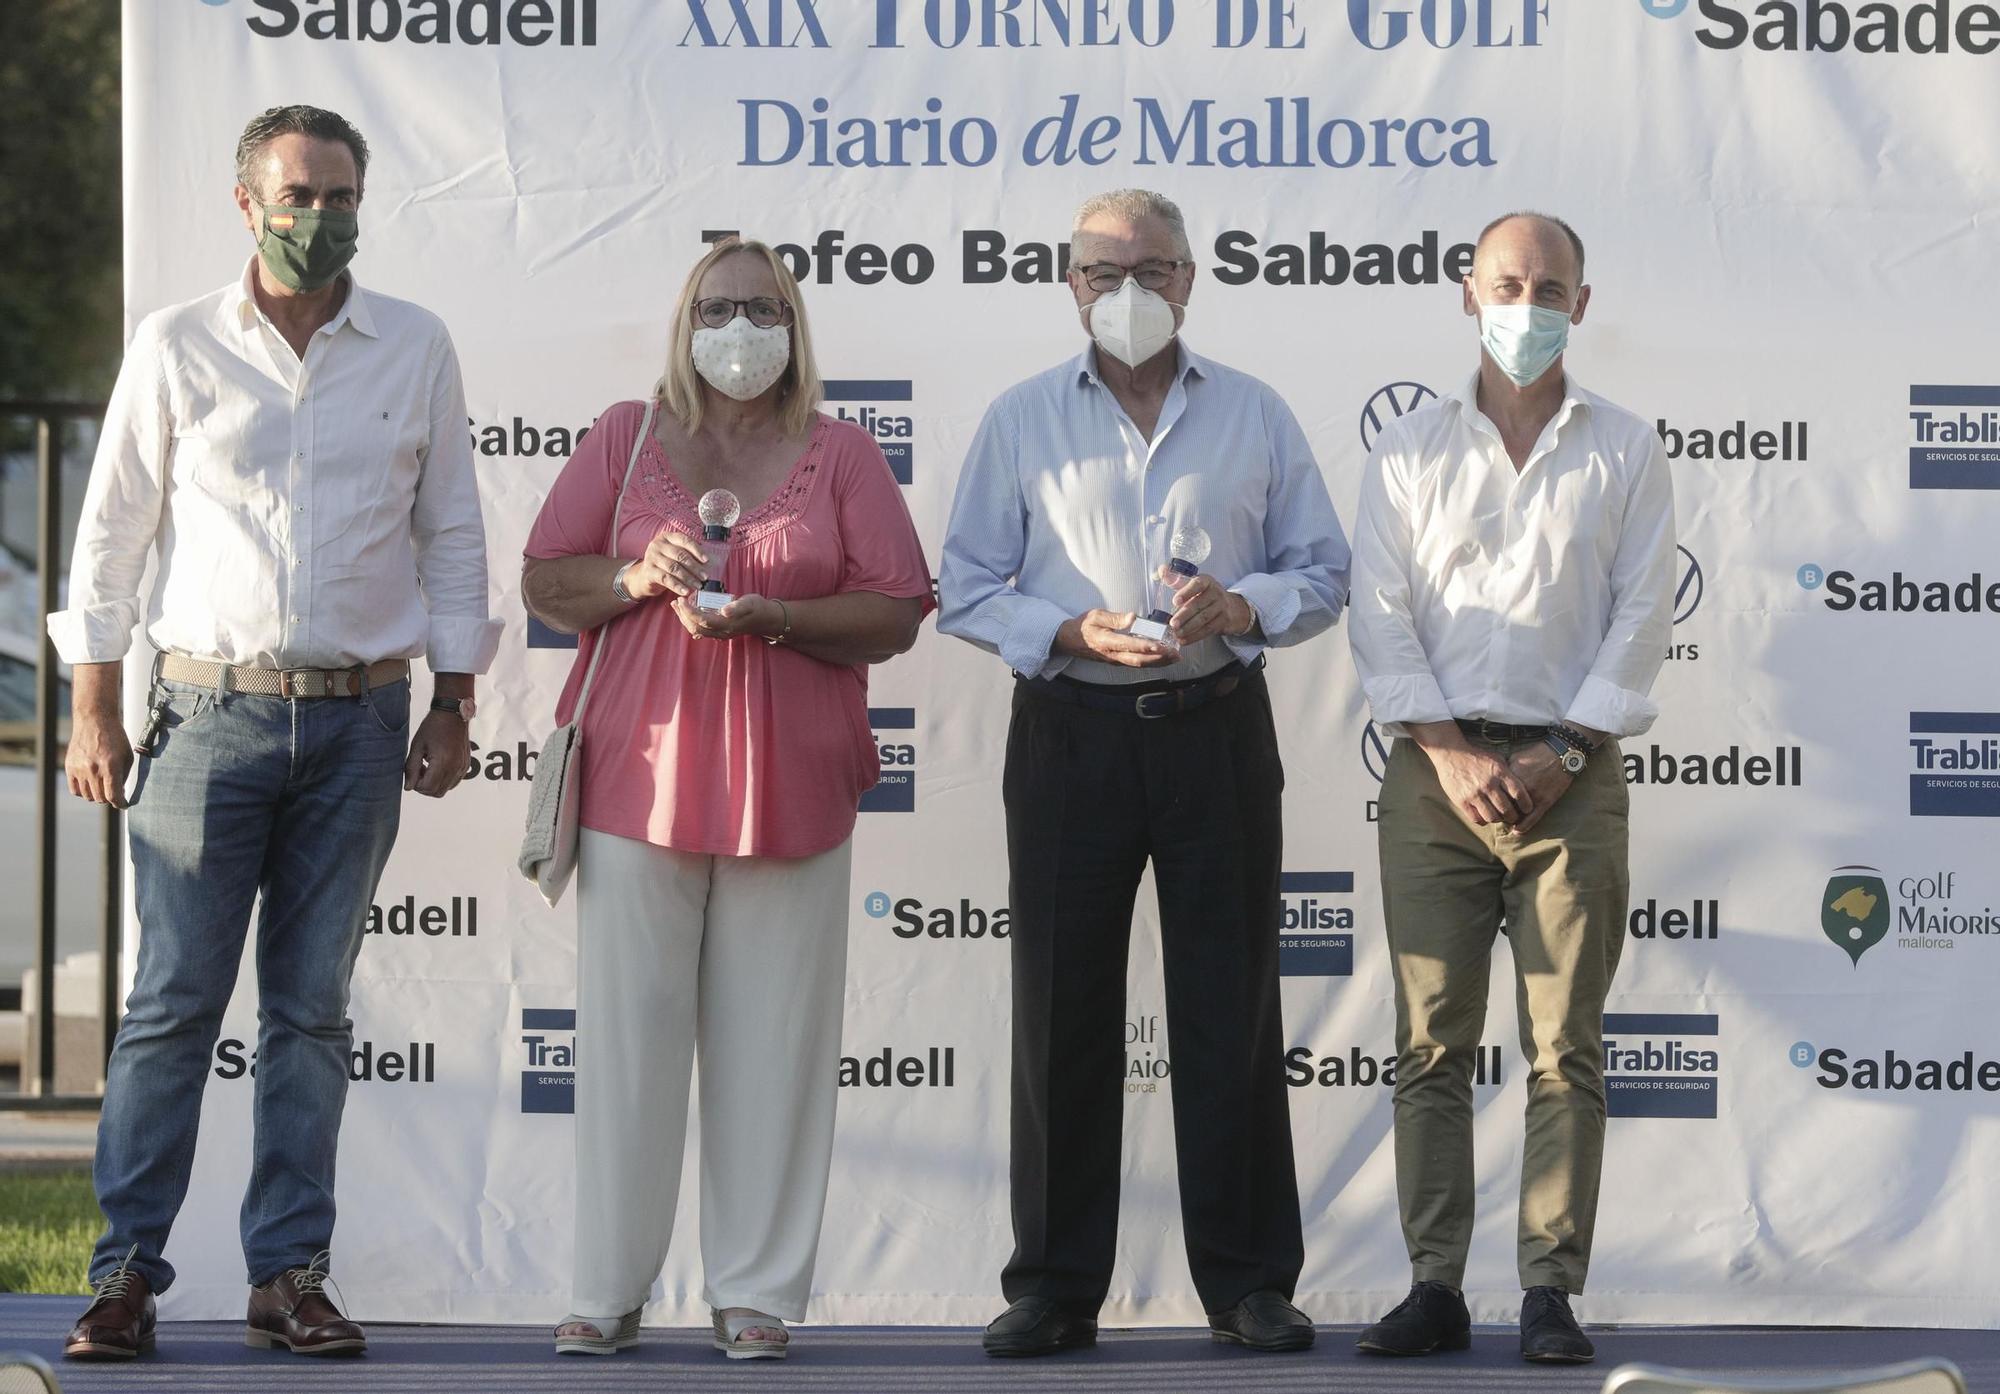 Los ganadores del XXIX Torneo Diario de Mallorca Trofeo Banco Sabadell dan su último golpe